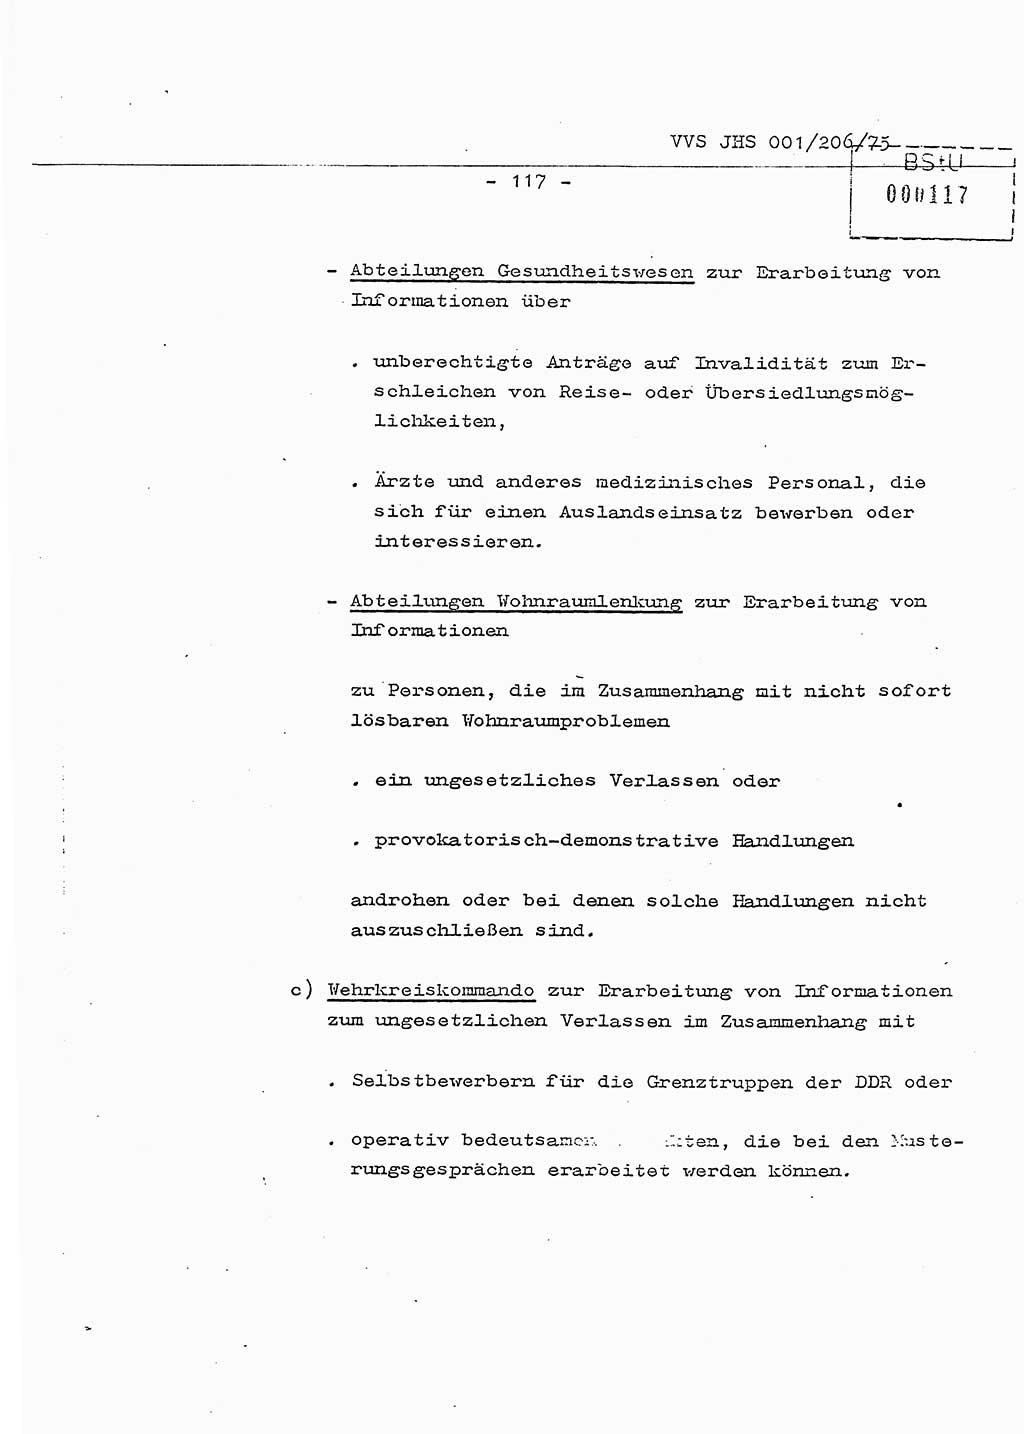 Dissertation Generalmajor Manfred Hummitzsch (Leiter der BV Leipzig), Generalmajor Heinz Fiedler (HA Ⅵ), Oberst Rolf Fister (HA Ⅸ), Ministerium für Staatssicherheit (MfS) [Deutsche Demokratische Republik (DDR)], Juristische Hochschule (JHS), Vertrauliche Verschlußsache (VVS) 001-206/75, Potsdam 1975, Seite 117 (Diss. MfS DDR JHS VVS 001-206/75 1975, S. 117)